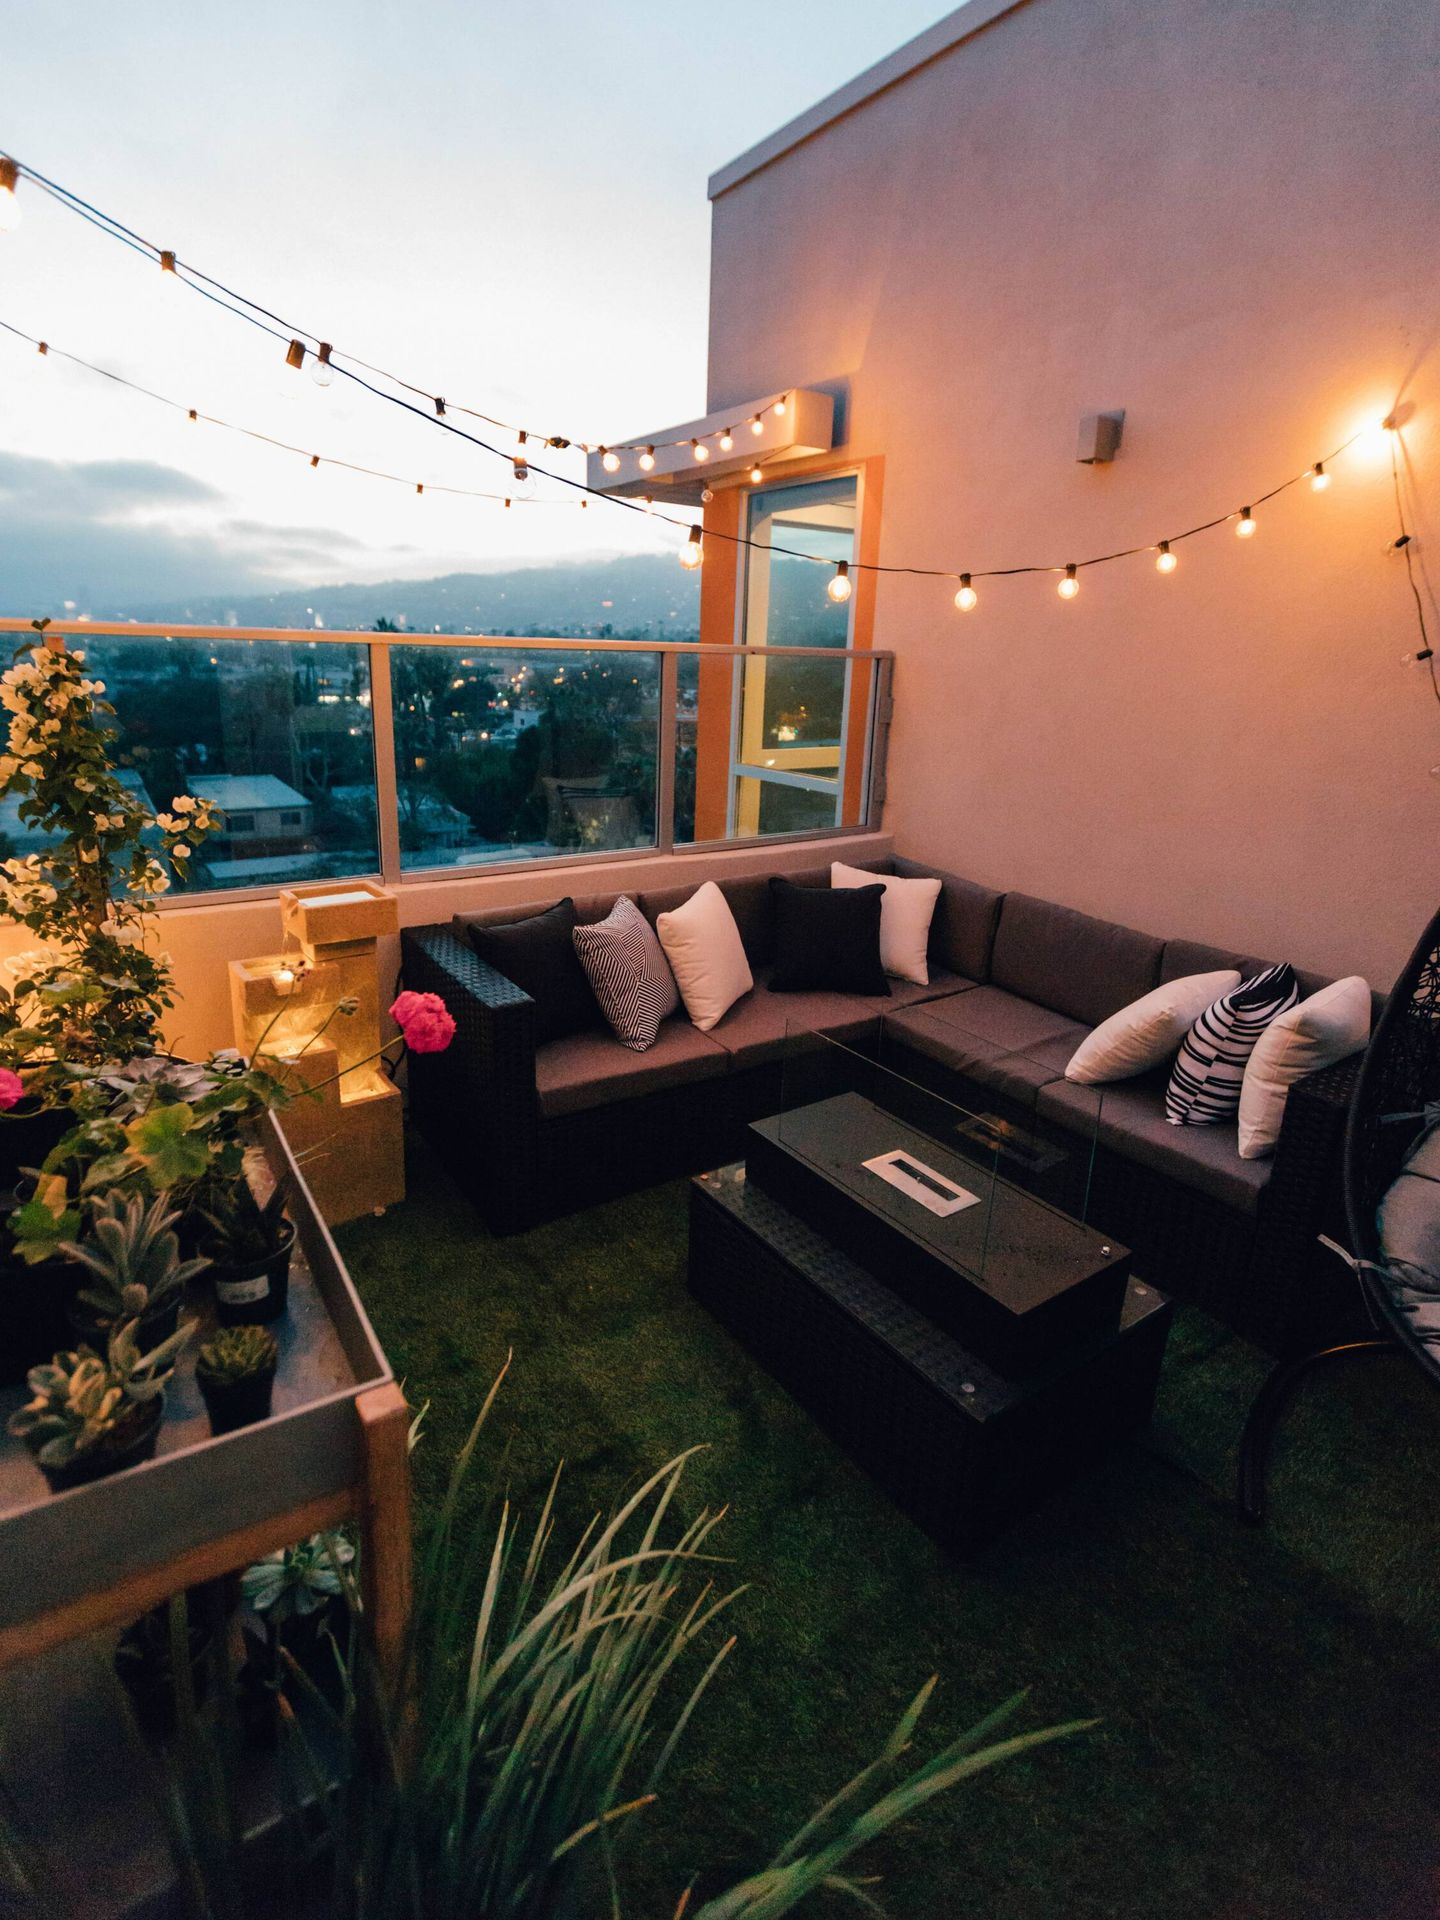 Prepara tu terraza para el calor con estos trucos deco. (Unsplash/Roberto Nickson)